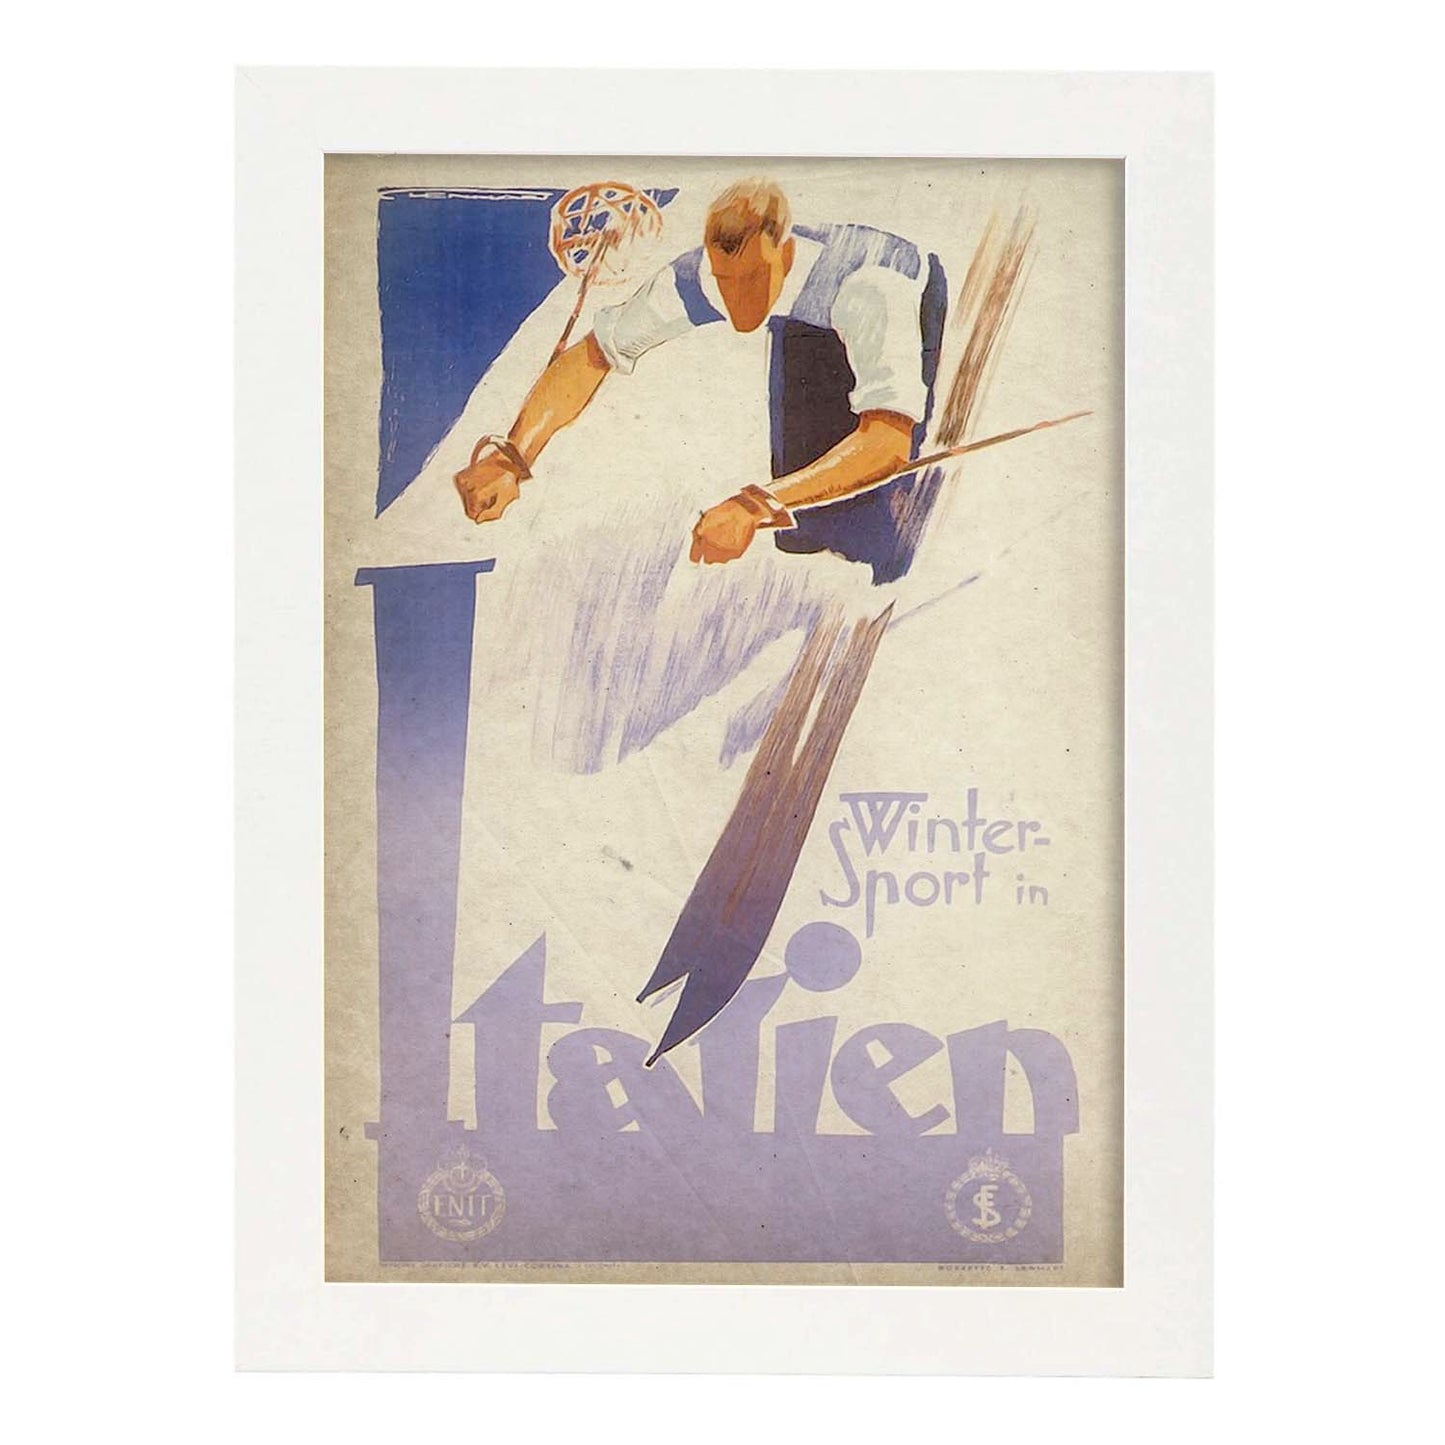 Poster vintage de Ski en Italia. con imágenes vintage y de publicidad antigua.-Artwork-Nacnic-A4-Marco Blanco-Nacnic Estudio SL